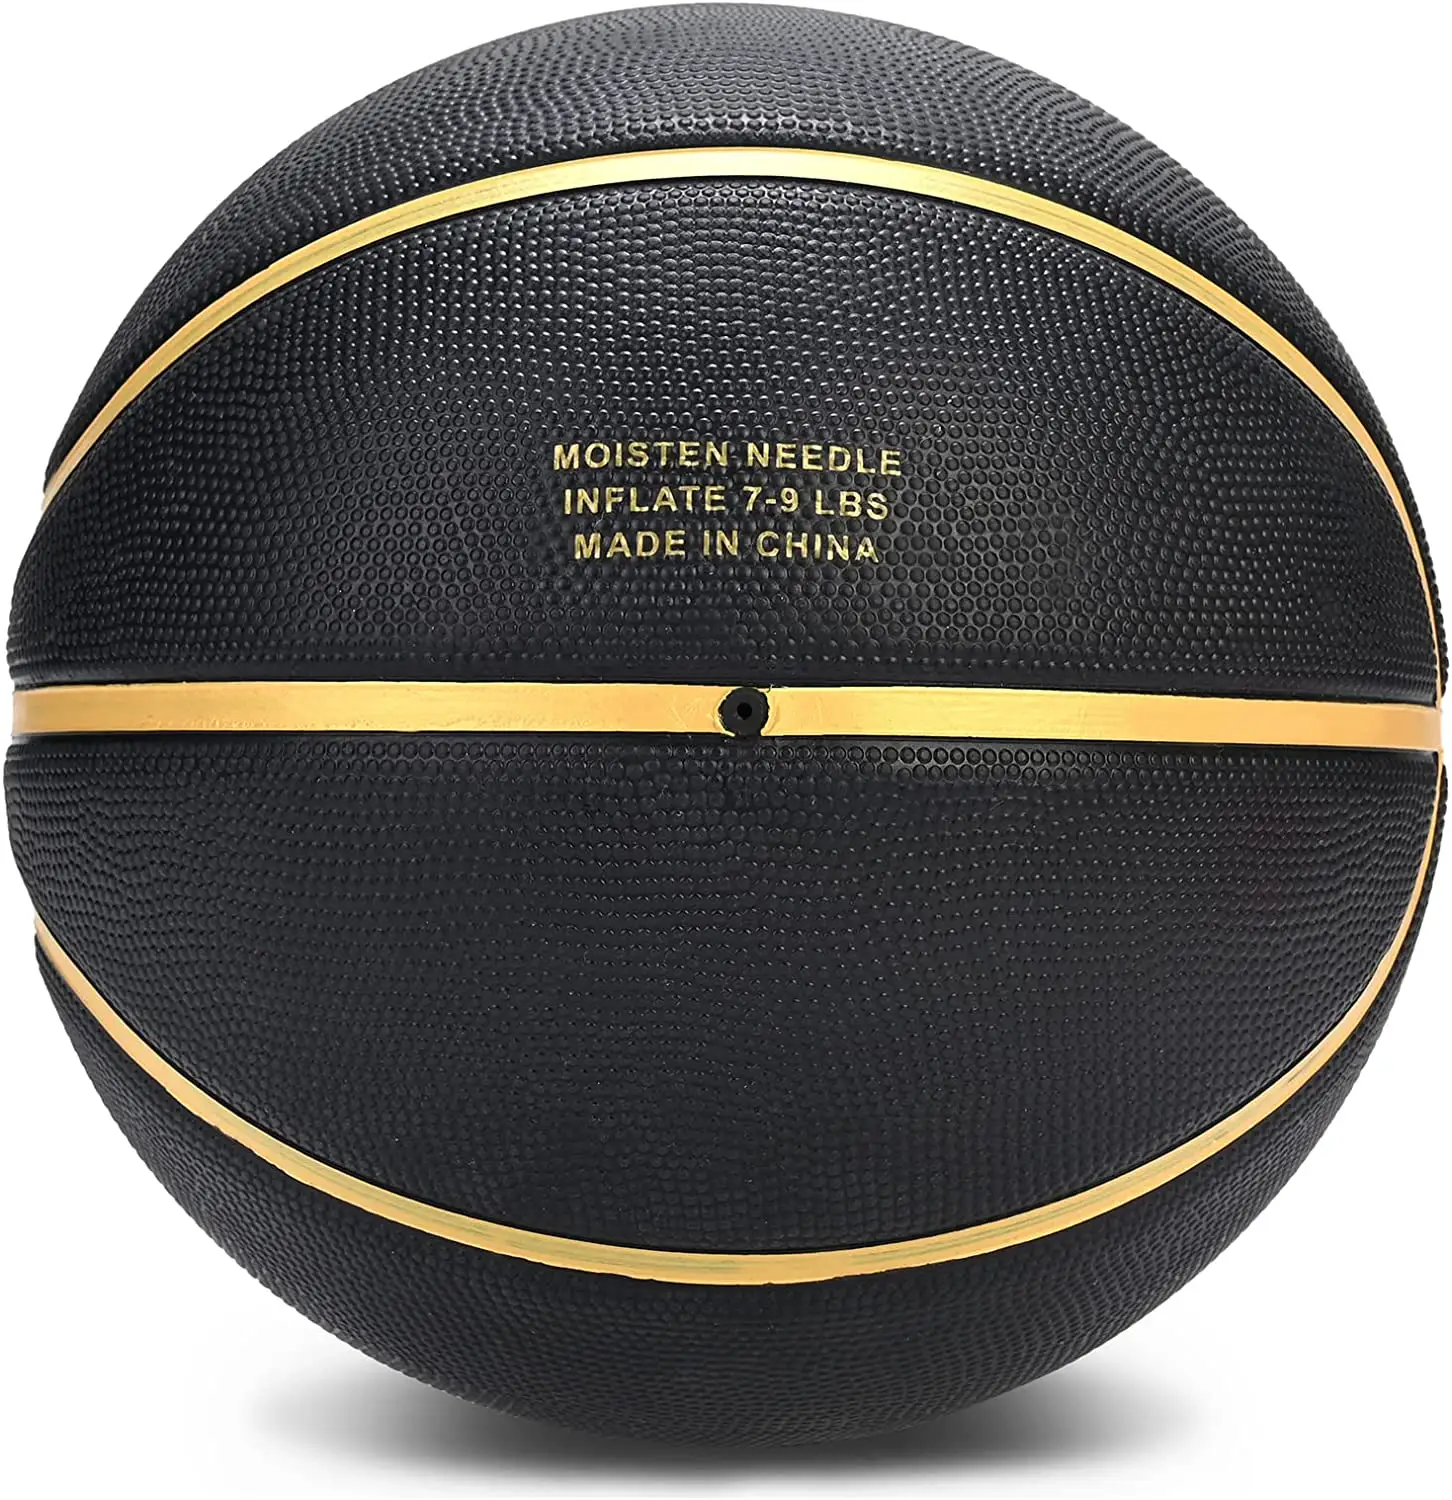 Cesta de borracha tamanho oficial 7 personalizado, cesta de basquete estampada com logotipo personalizado